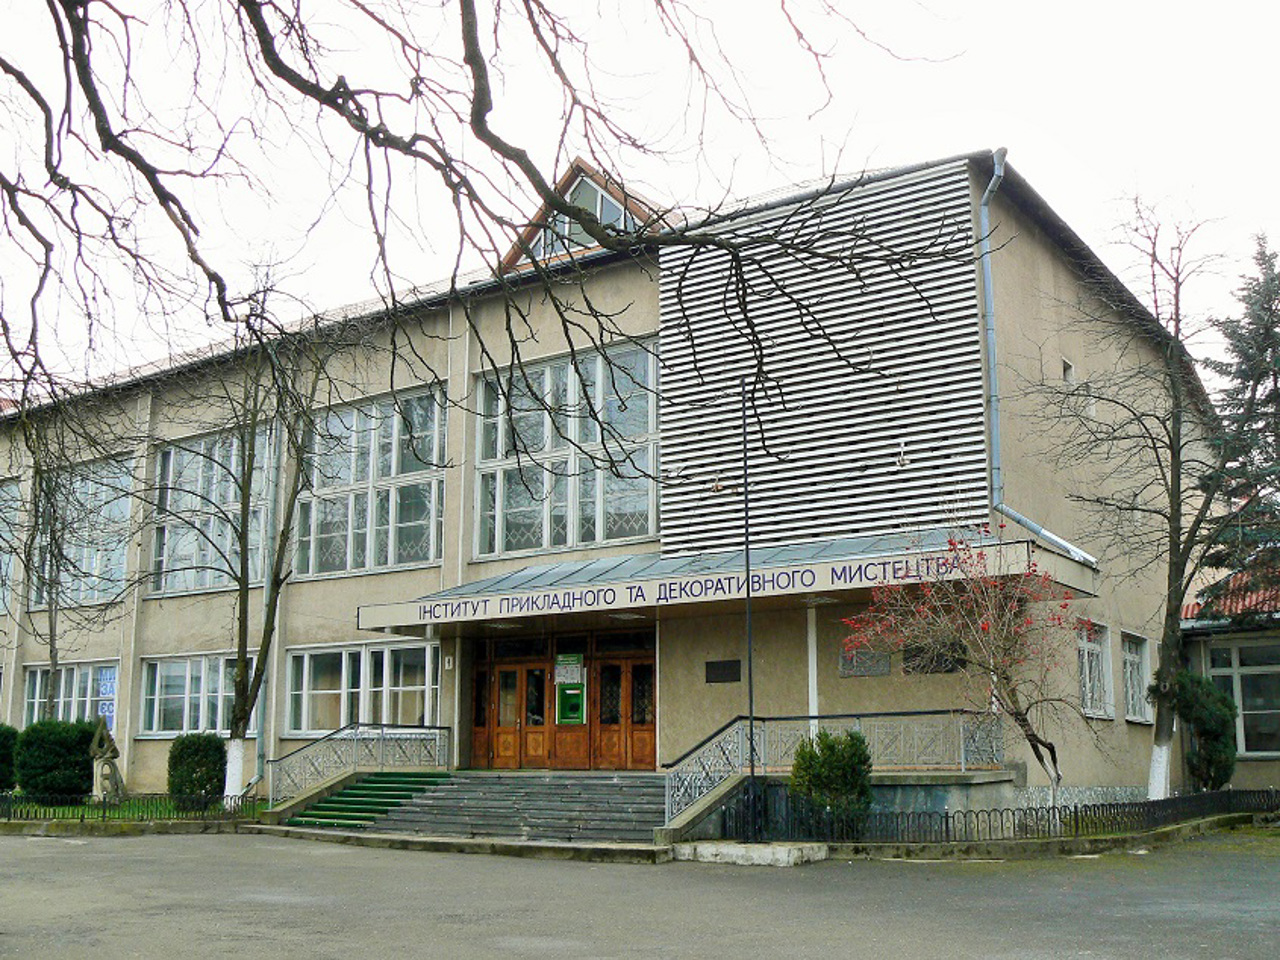 Музей института прикладного и декоративного искусства, Косов